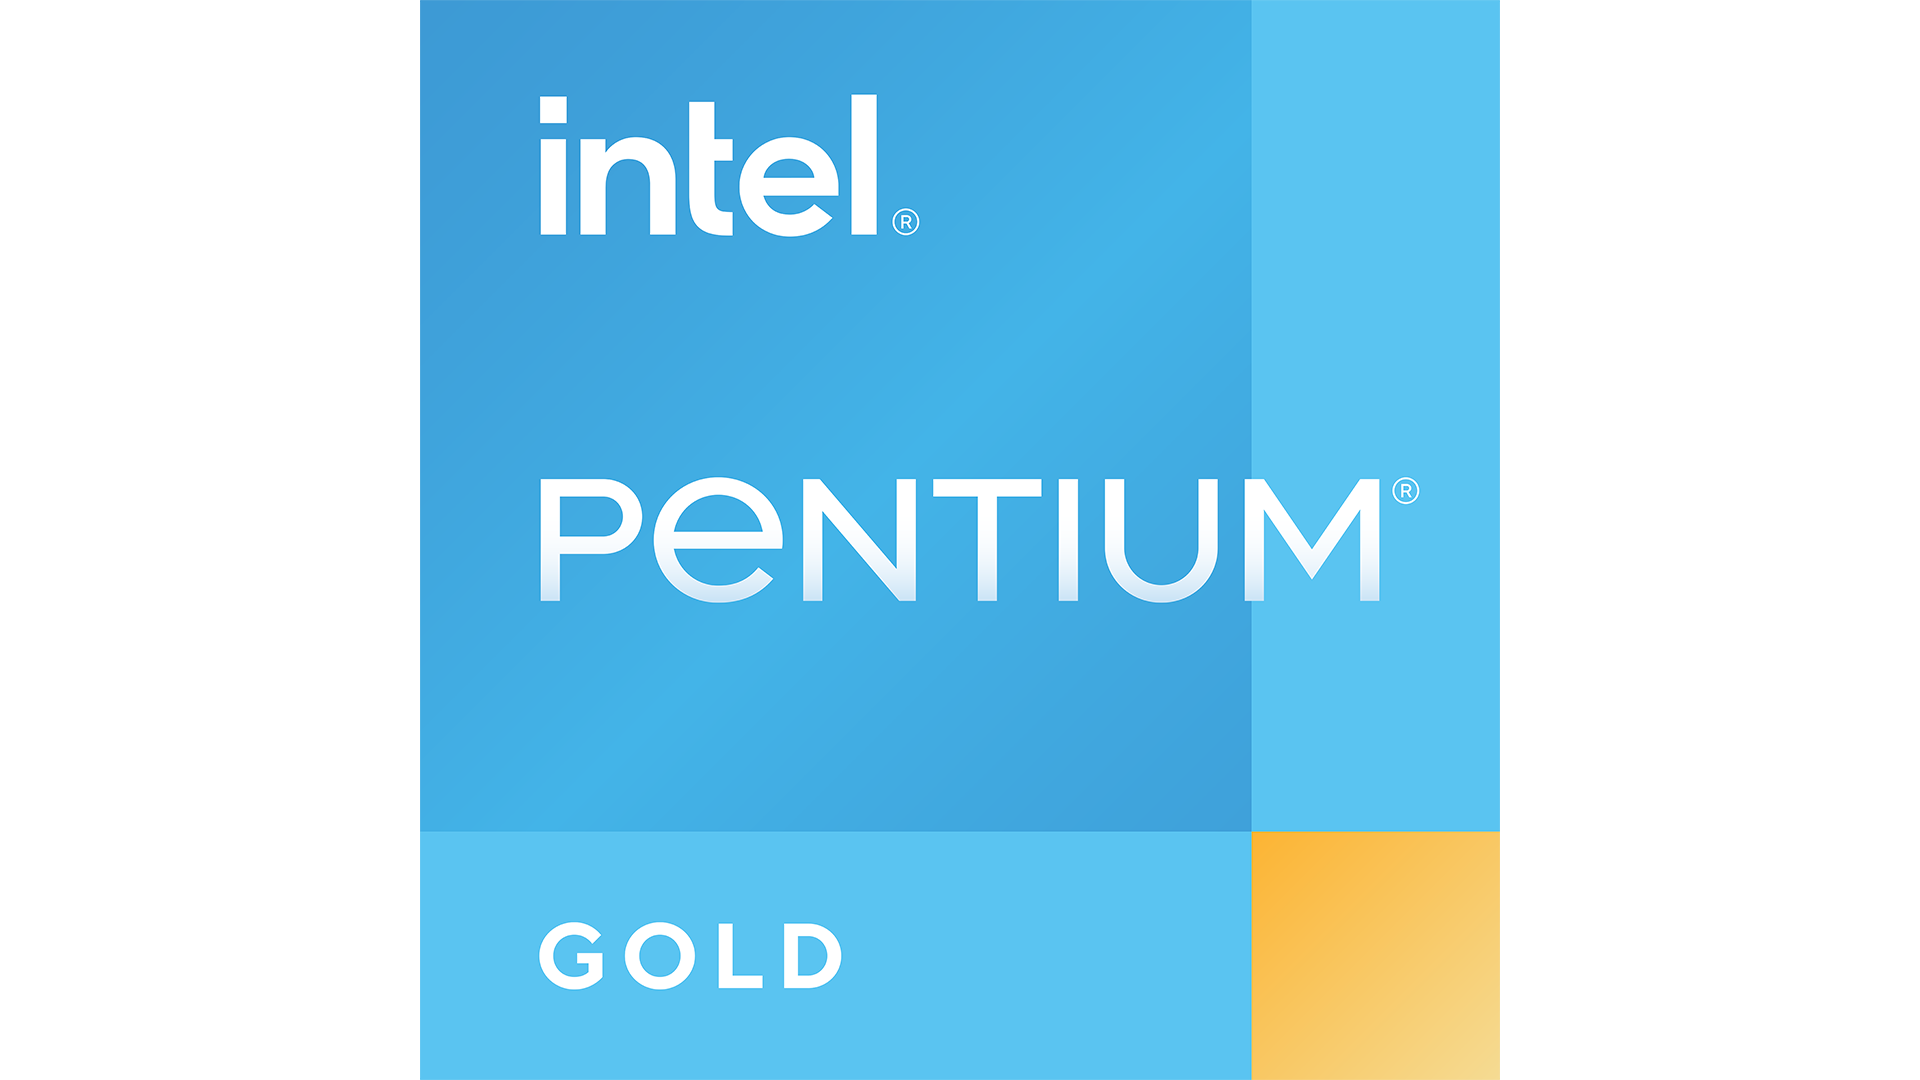 Intel® Pentium® Gold 處理器 8500